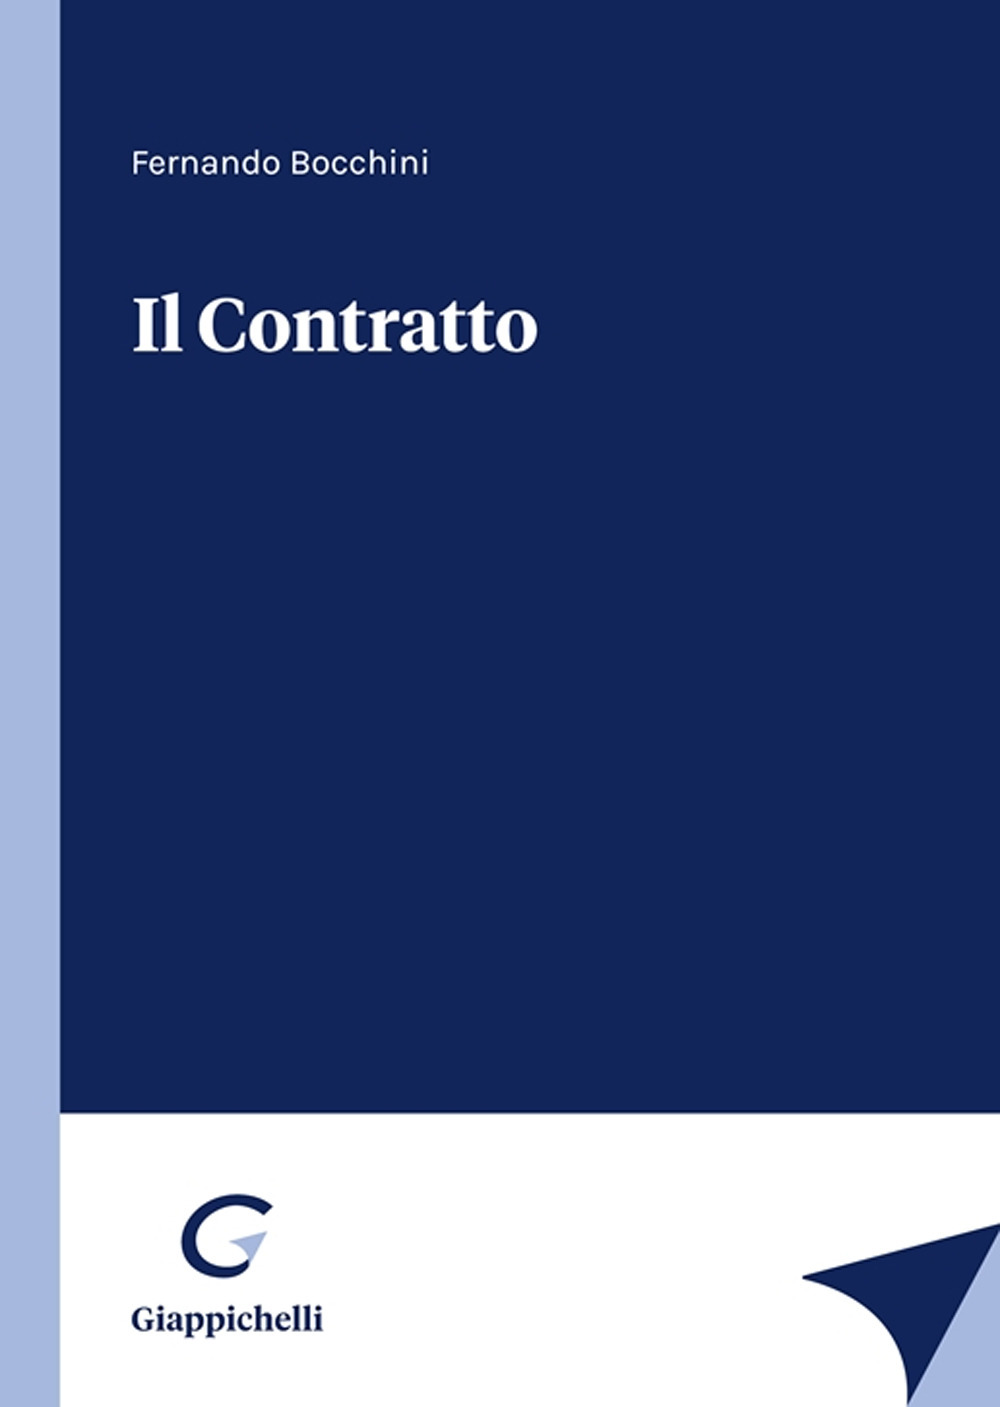 Libri Fernando Bocchini - Il Contratto NUOVO SIGILLATO, EDIZIONE DEL 28/02/2023 SUBITO DISPONIBILE